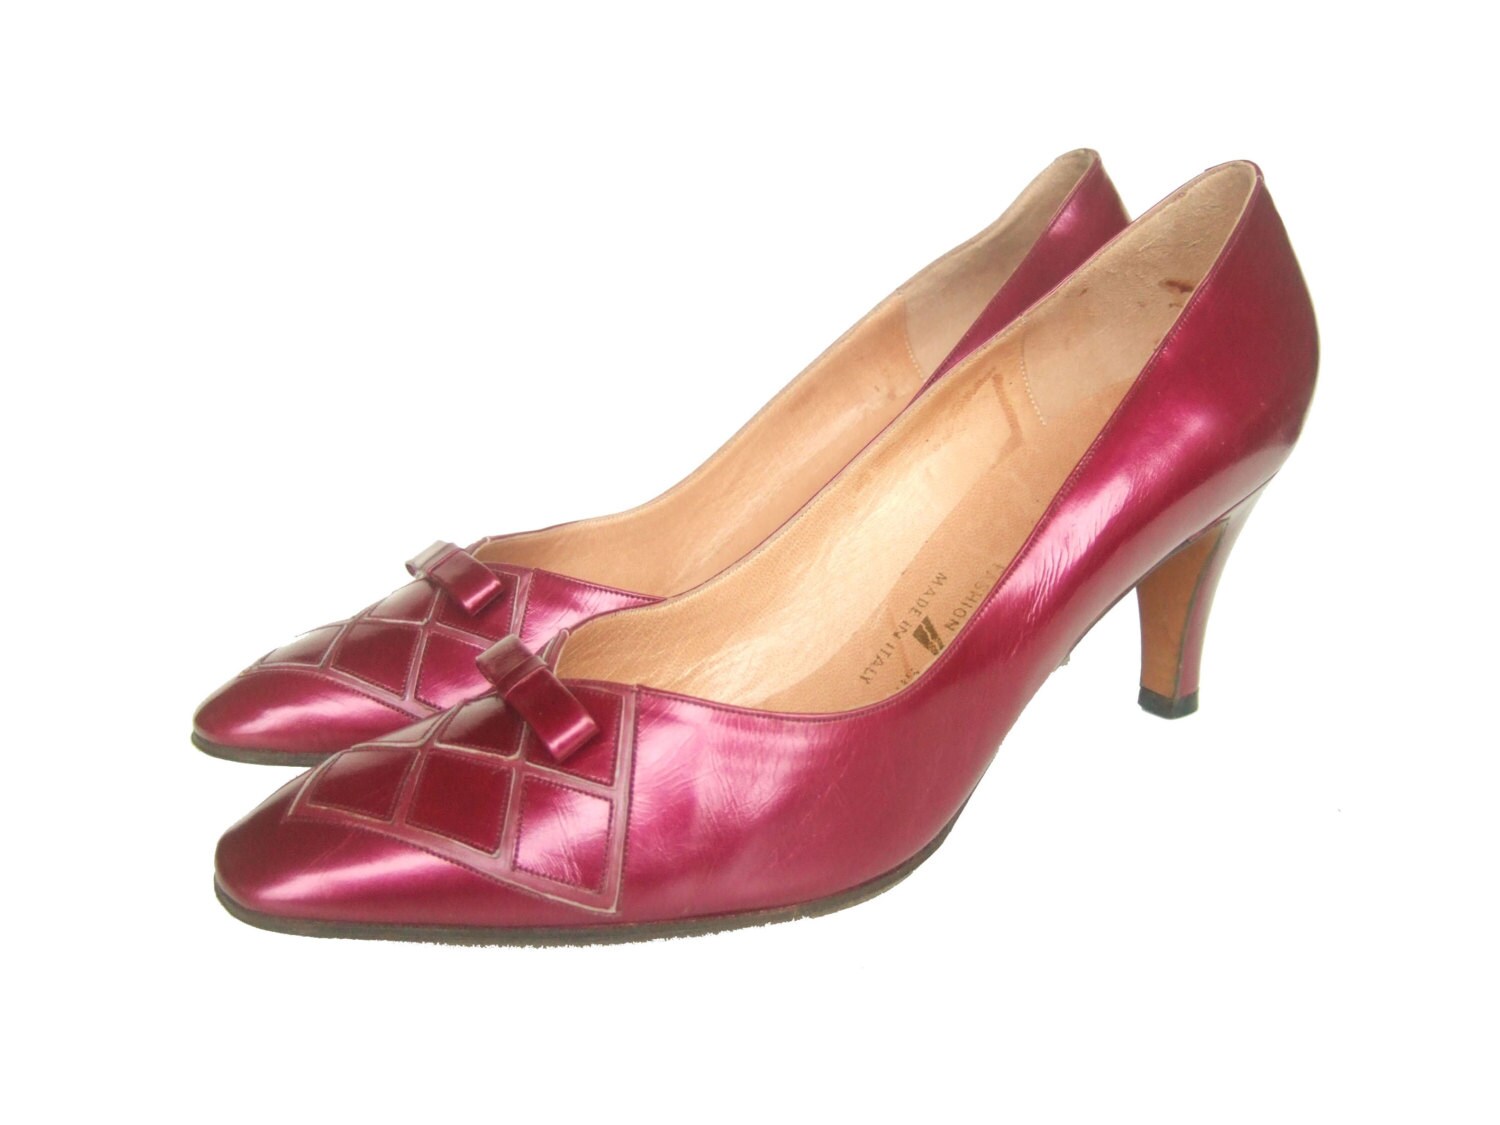 UK 3.5 Vintage unworn 1960s shoes in metallic by StellaRoseVintage